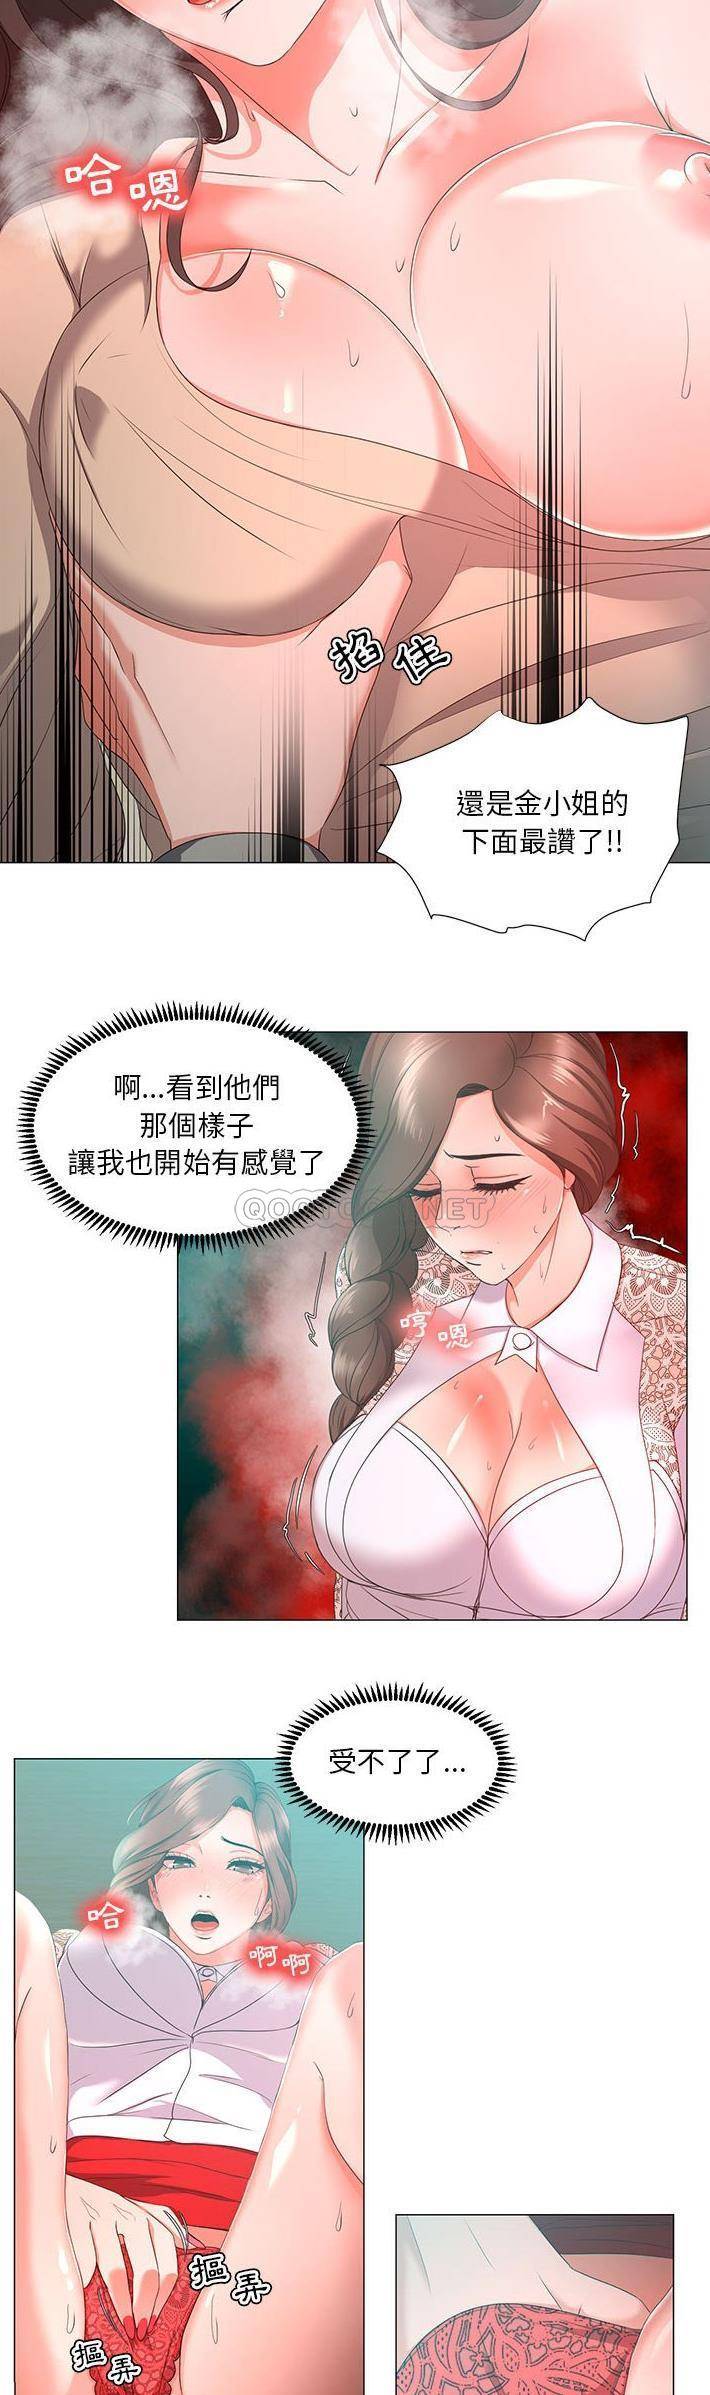 韩国污漫画 女人專門為難女人(女人的戰爭) 第14话 16